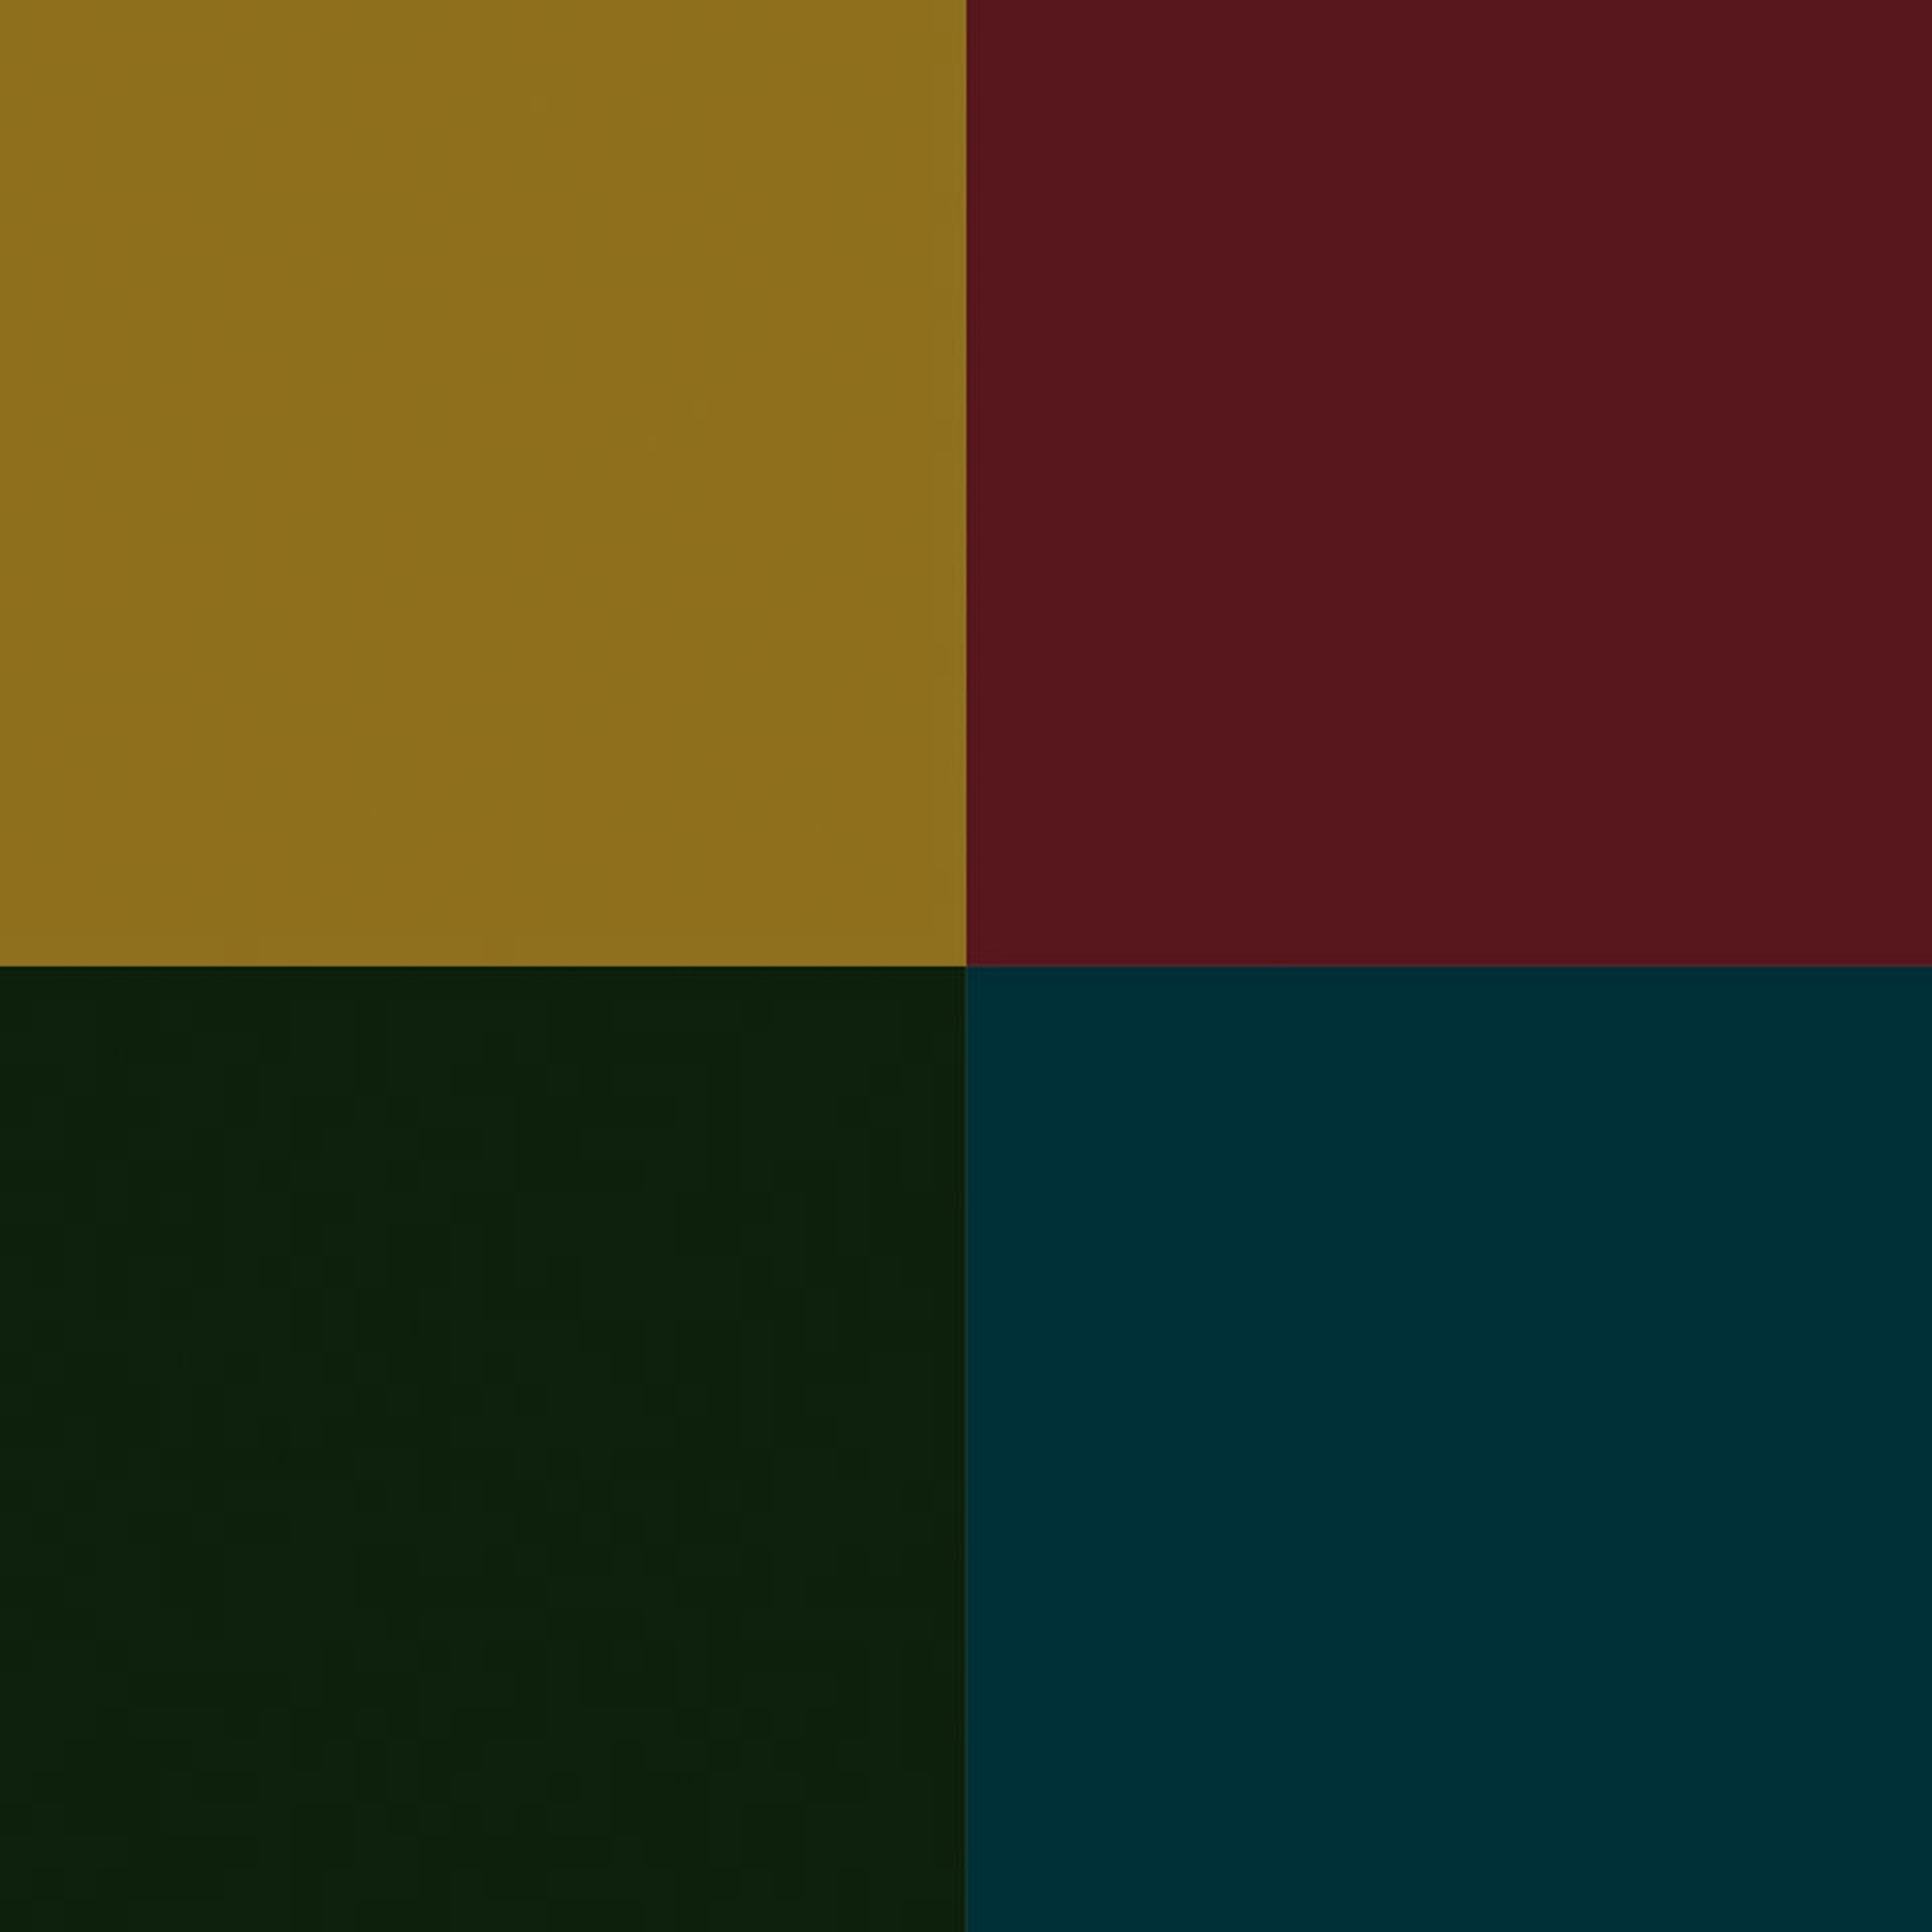 De elegant kleuren: olijfgeel, Indisch rood, jaguargroen en diepblauw.